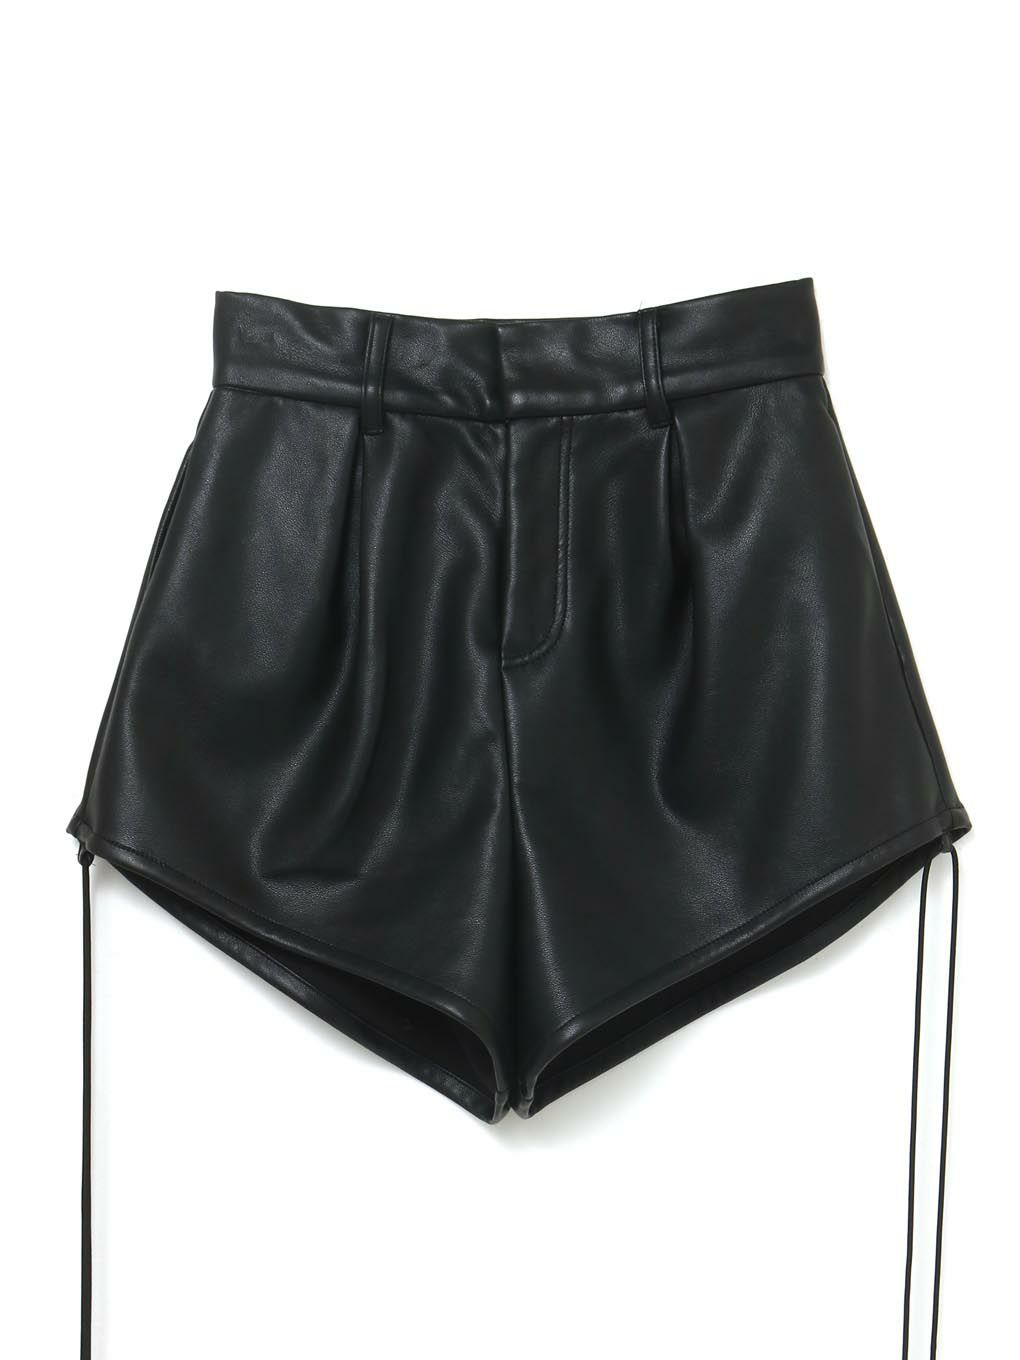 韓国meltthelady 21 leather like short pants